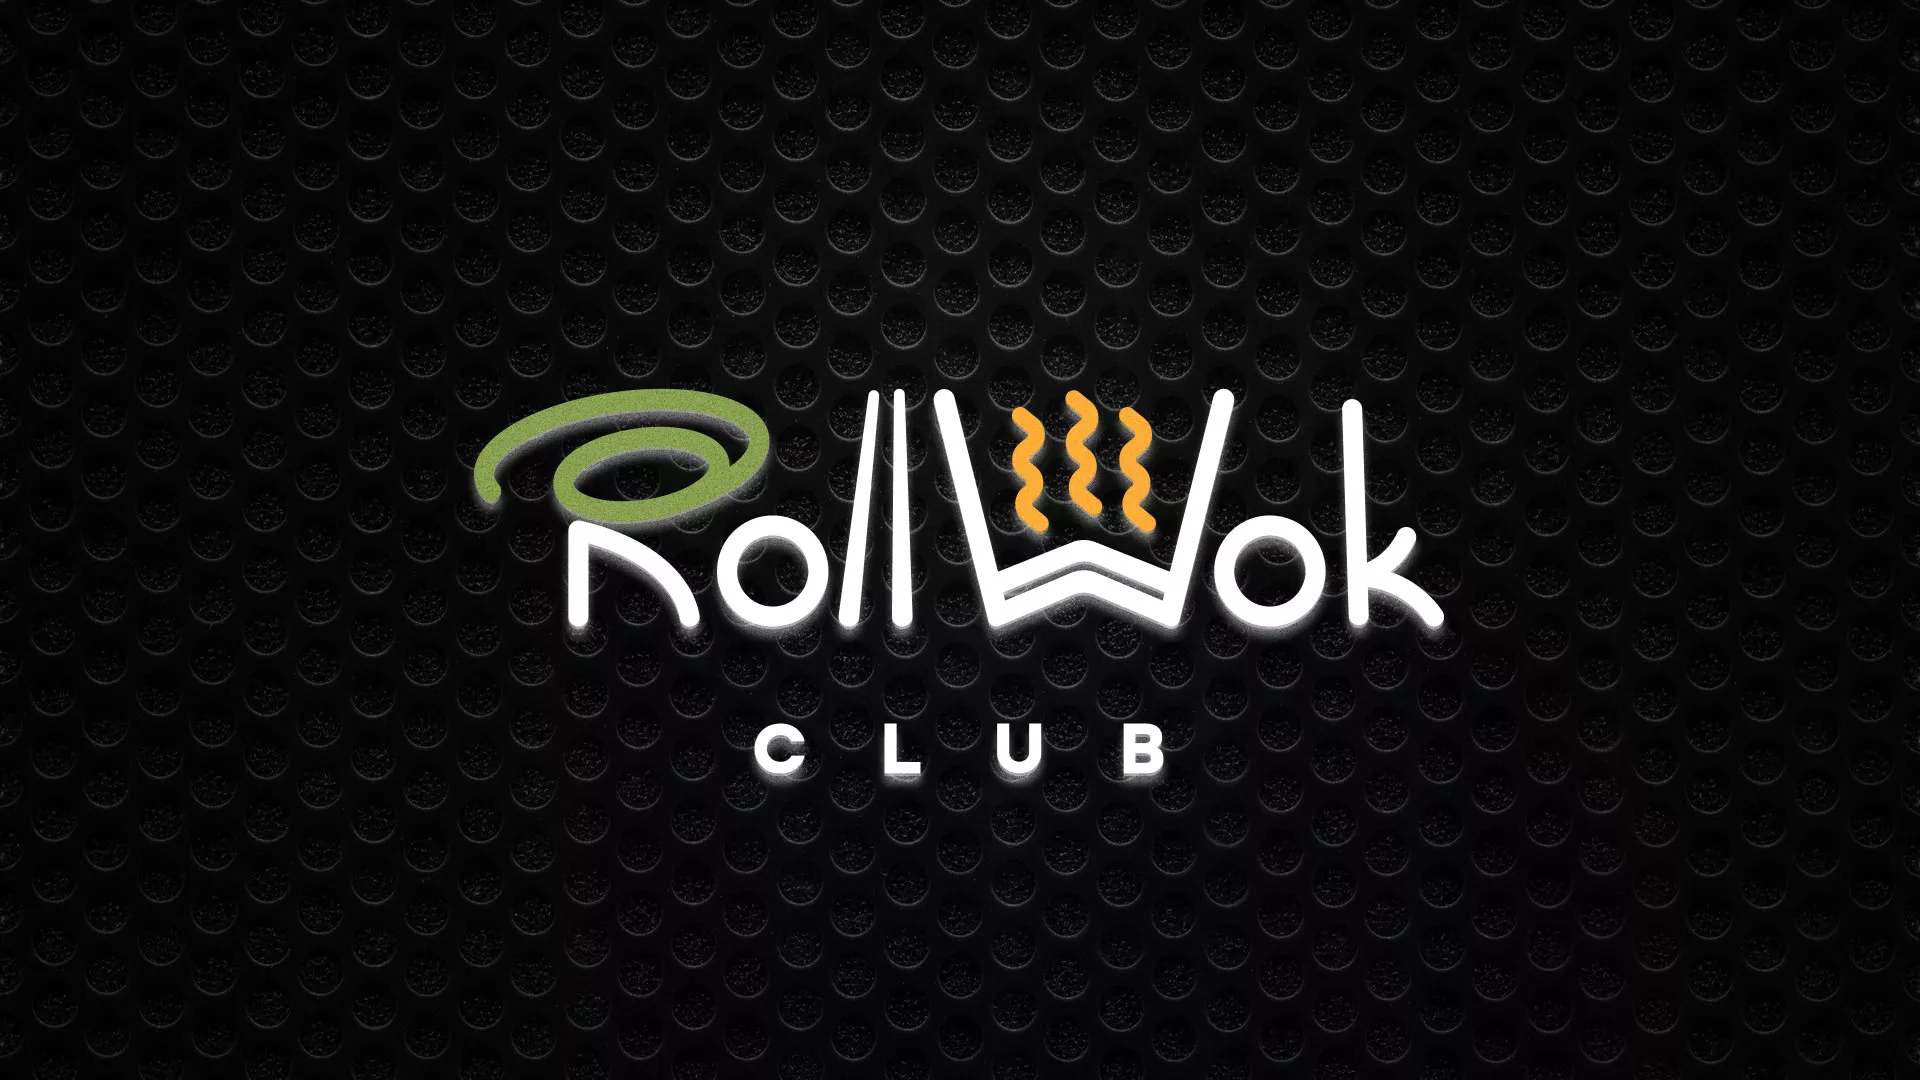 Брендирование торговых точек суши-бара «Roll Wok Club» в Харабалях